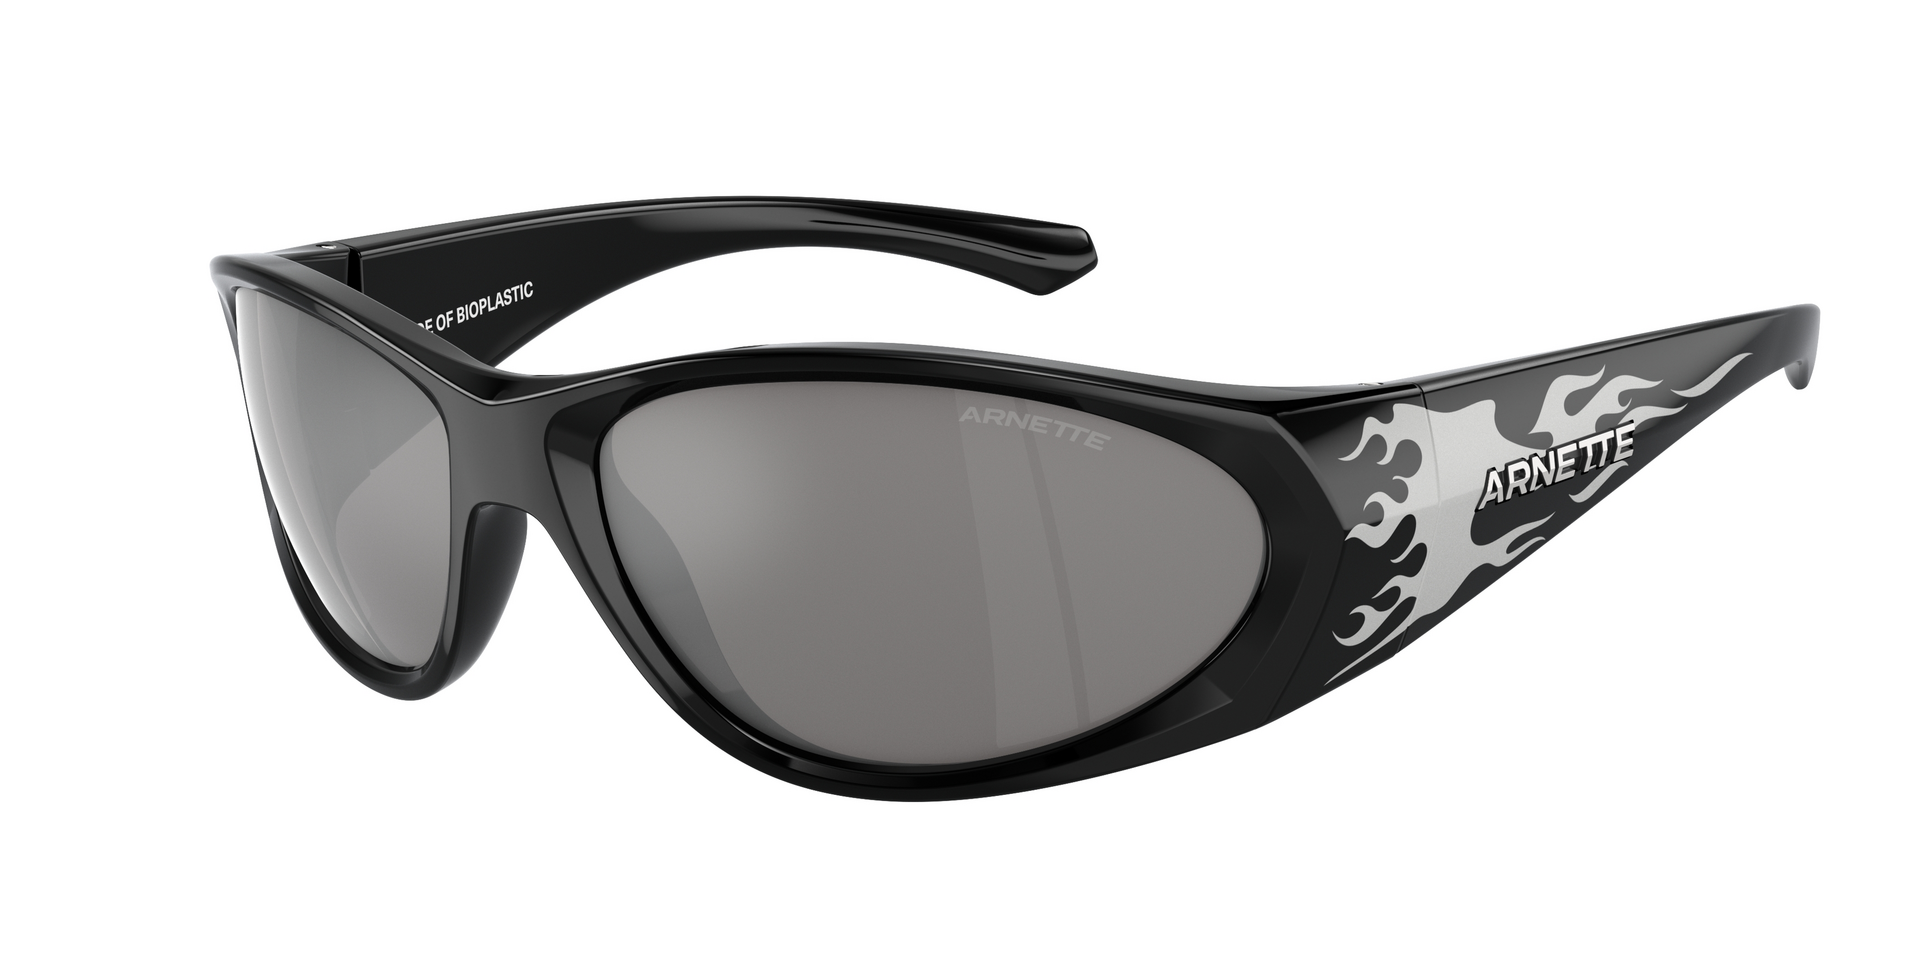 Das Bild zeigt die Sonnenbrille AN4342 29606G von der Marke Arnette in schwarz.